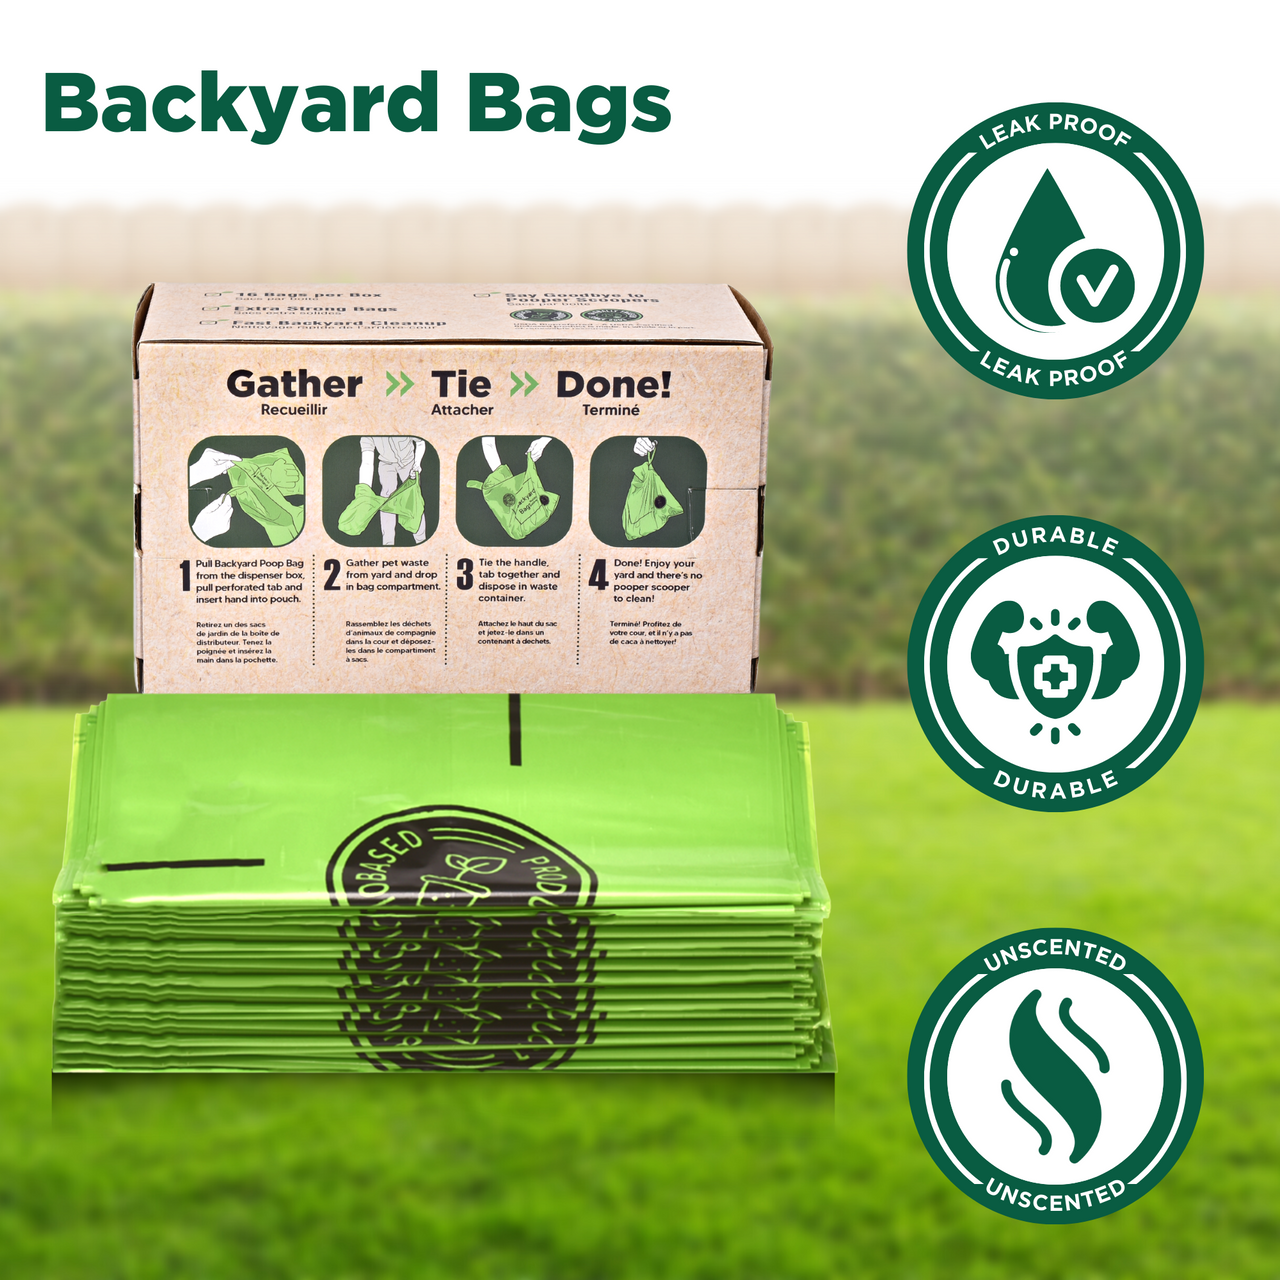 The Original Poop Bags® 16 Pick-Up Backyard Bags